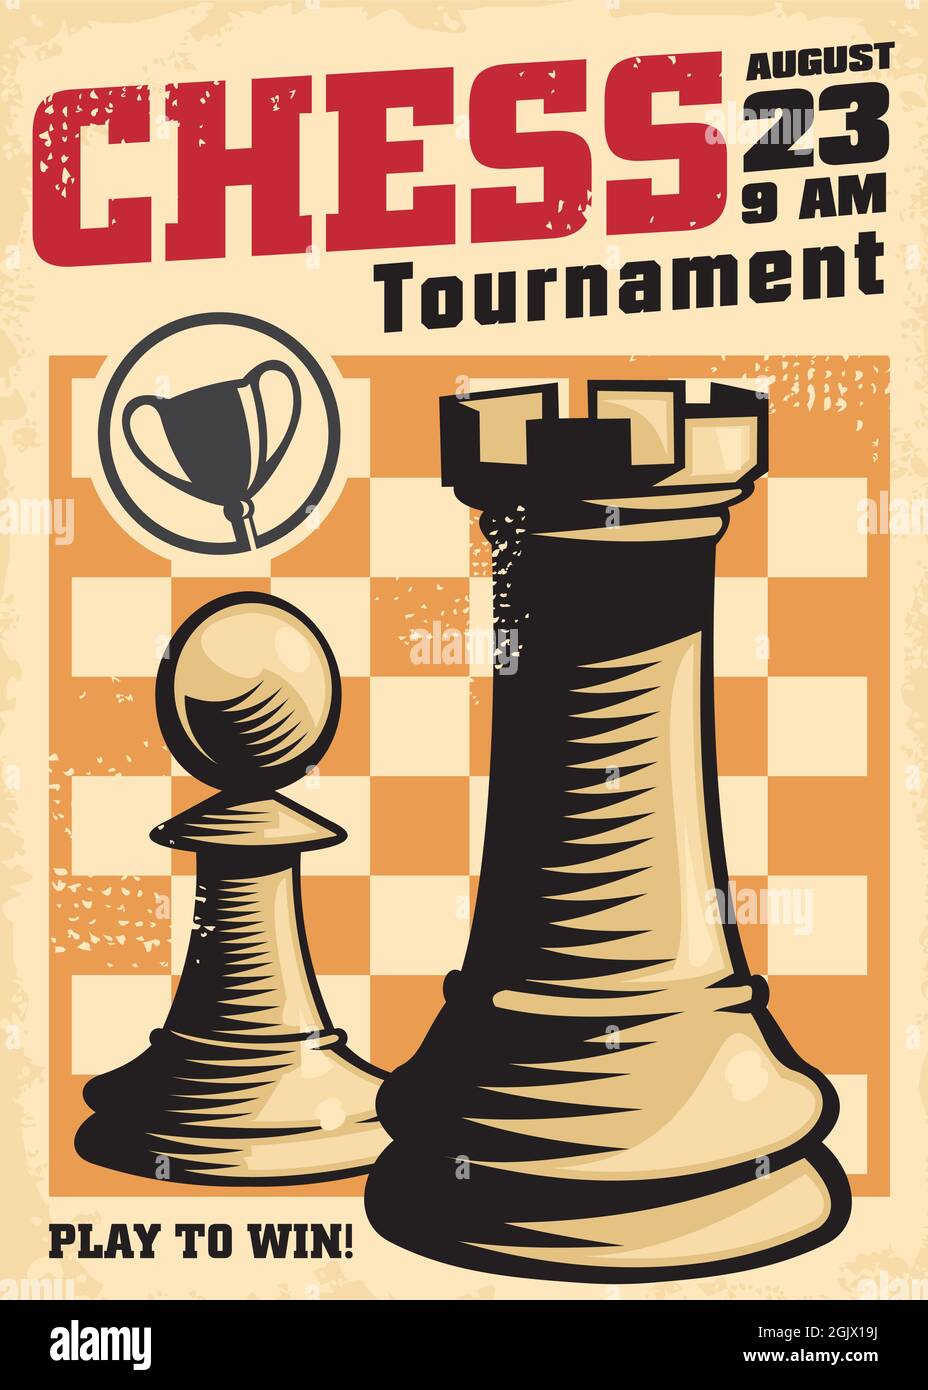 Modèle d'affiche vintage pour un tournoi d'échecs avec rook et pion sur le plateau d'échecs. Enseigne rétro. Vecteur d'échecs. Illustration de Vecteur